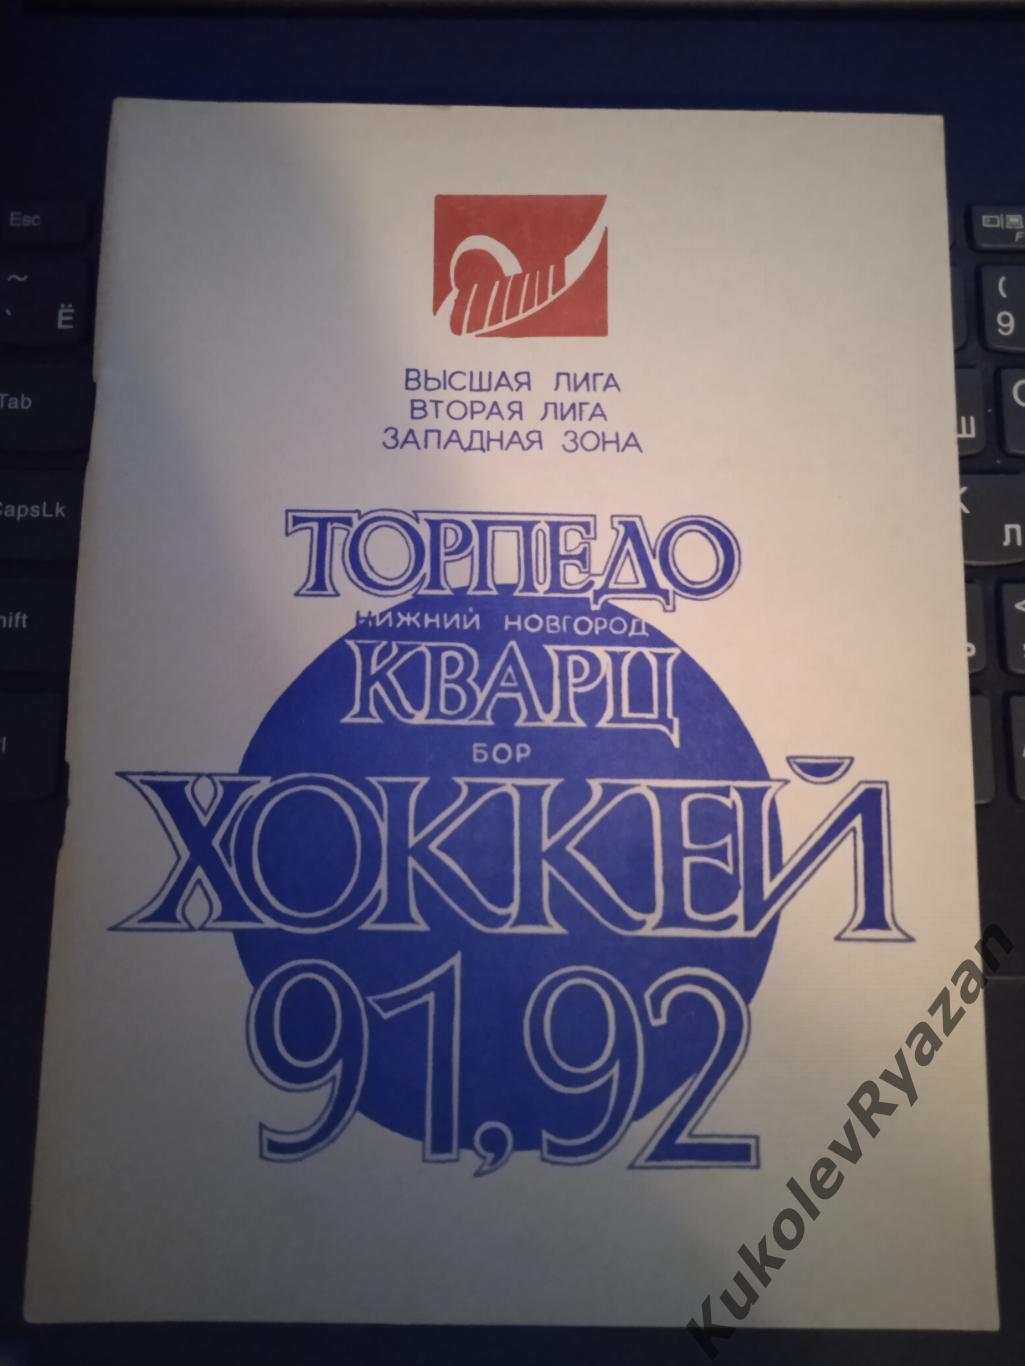 Хоккей Нижний Новгород 1991 1992 Адреса коллекционеров